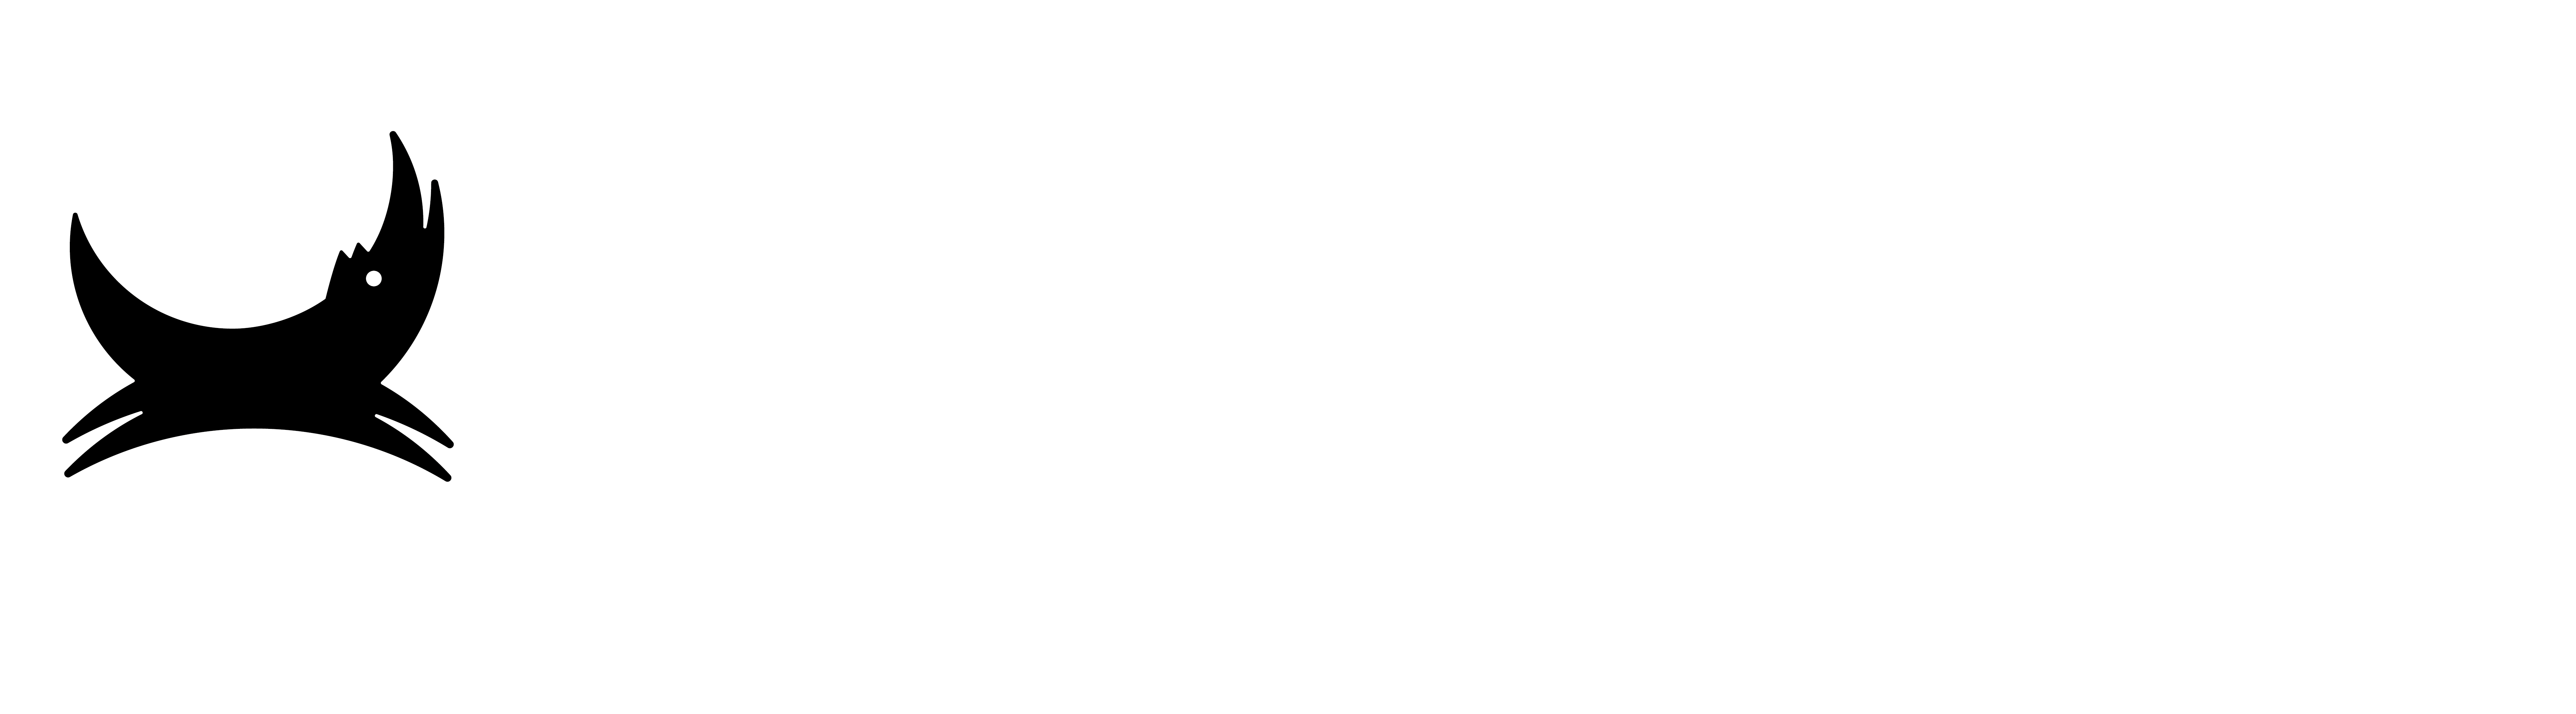 brewdog logo